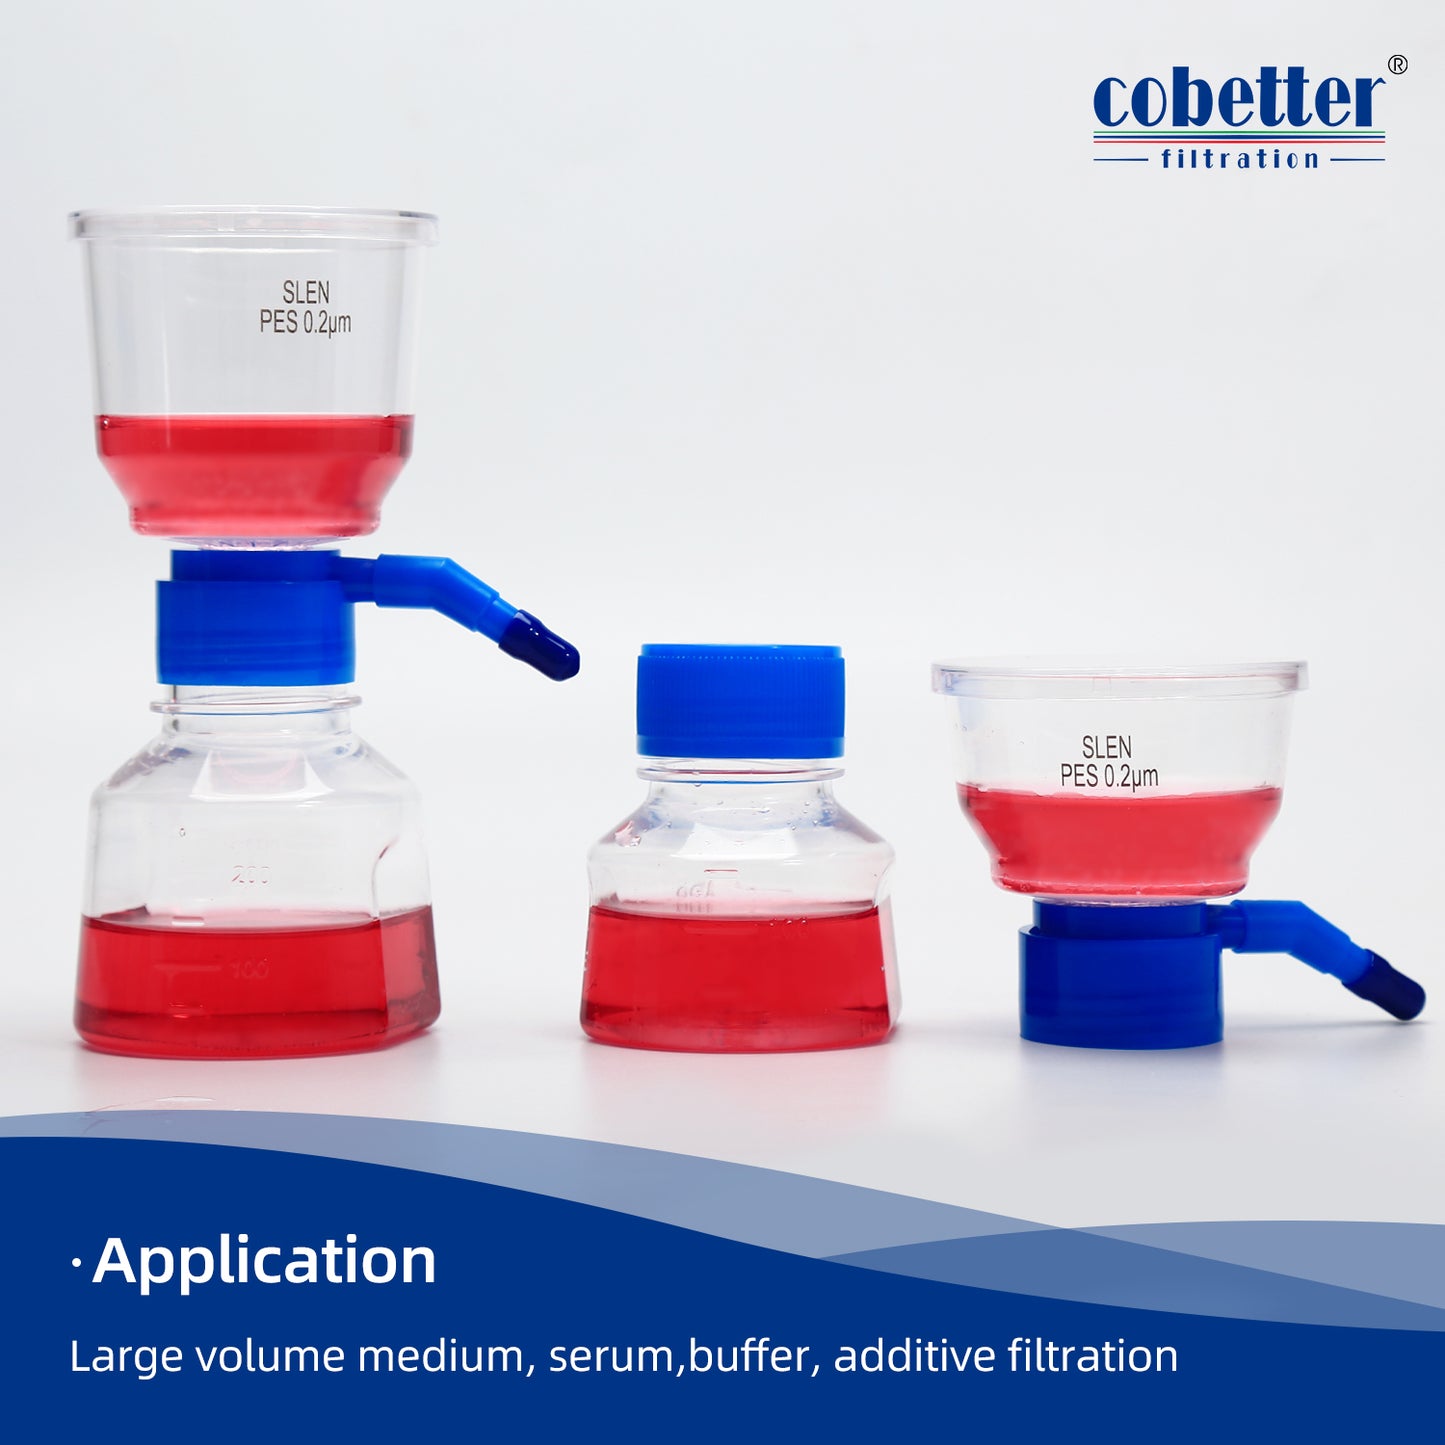 COBETTER Bottle Top Vacuum Filter Sterile Filtration System PES Membrane